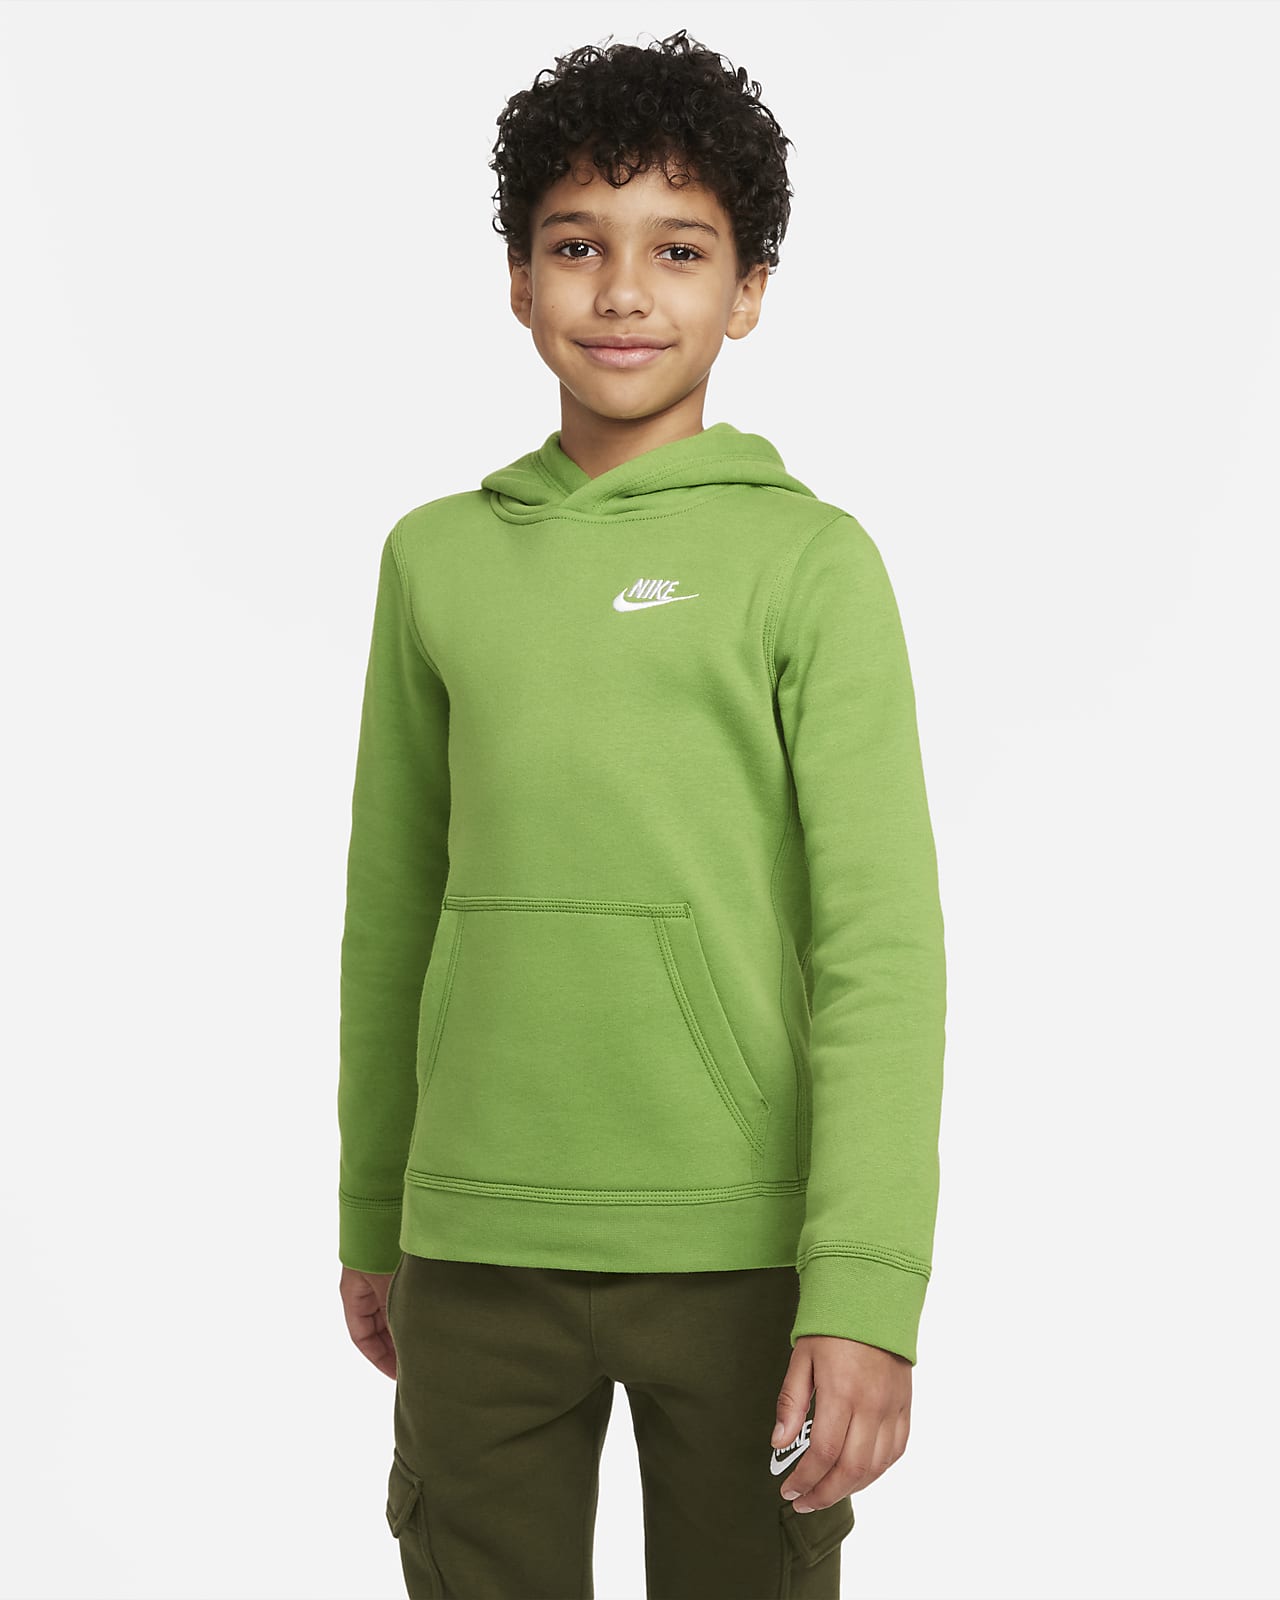 Nike Sportswear Club Big Kids' Pullover Hoodie